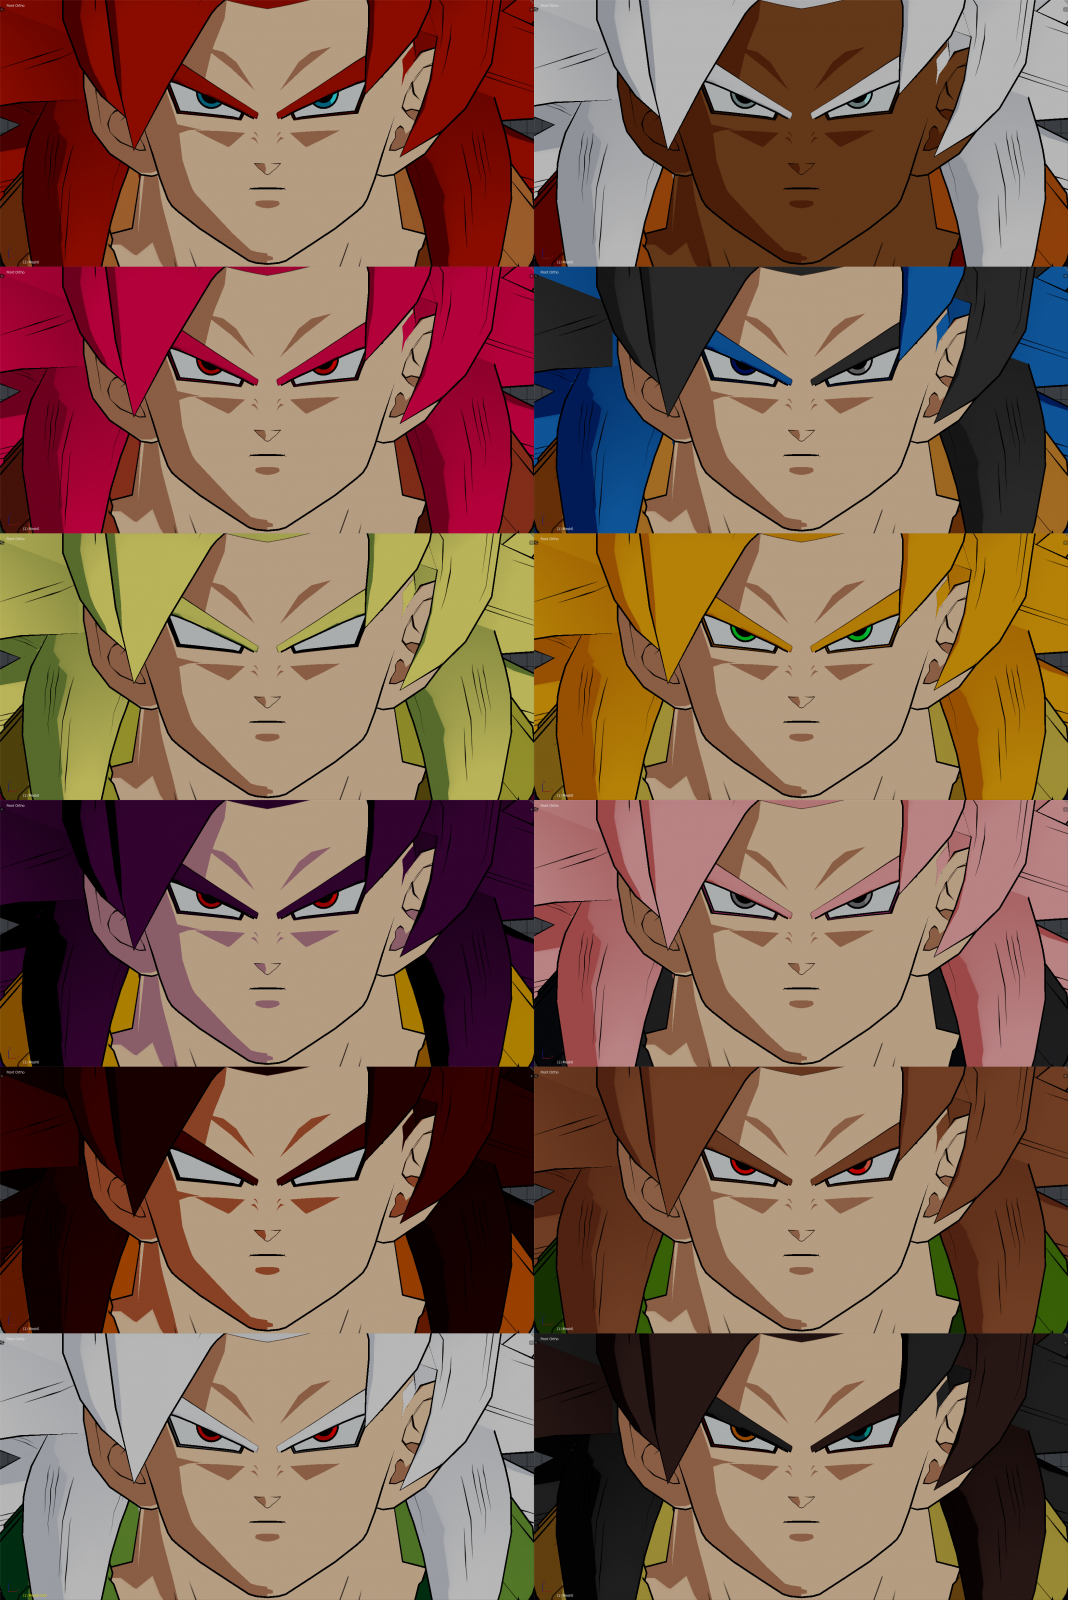 SSJ4 gogeta colors and avatars : r/dbfz